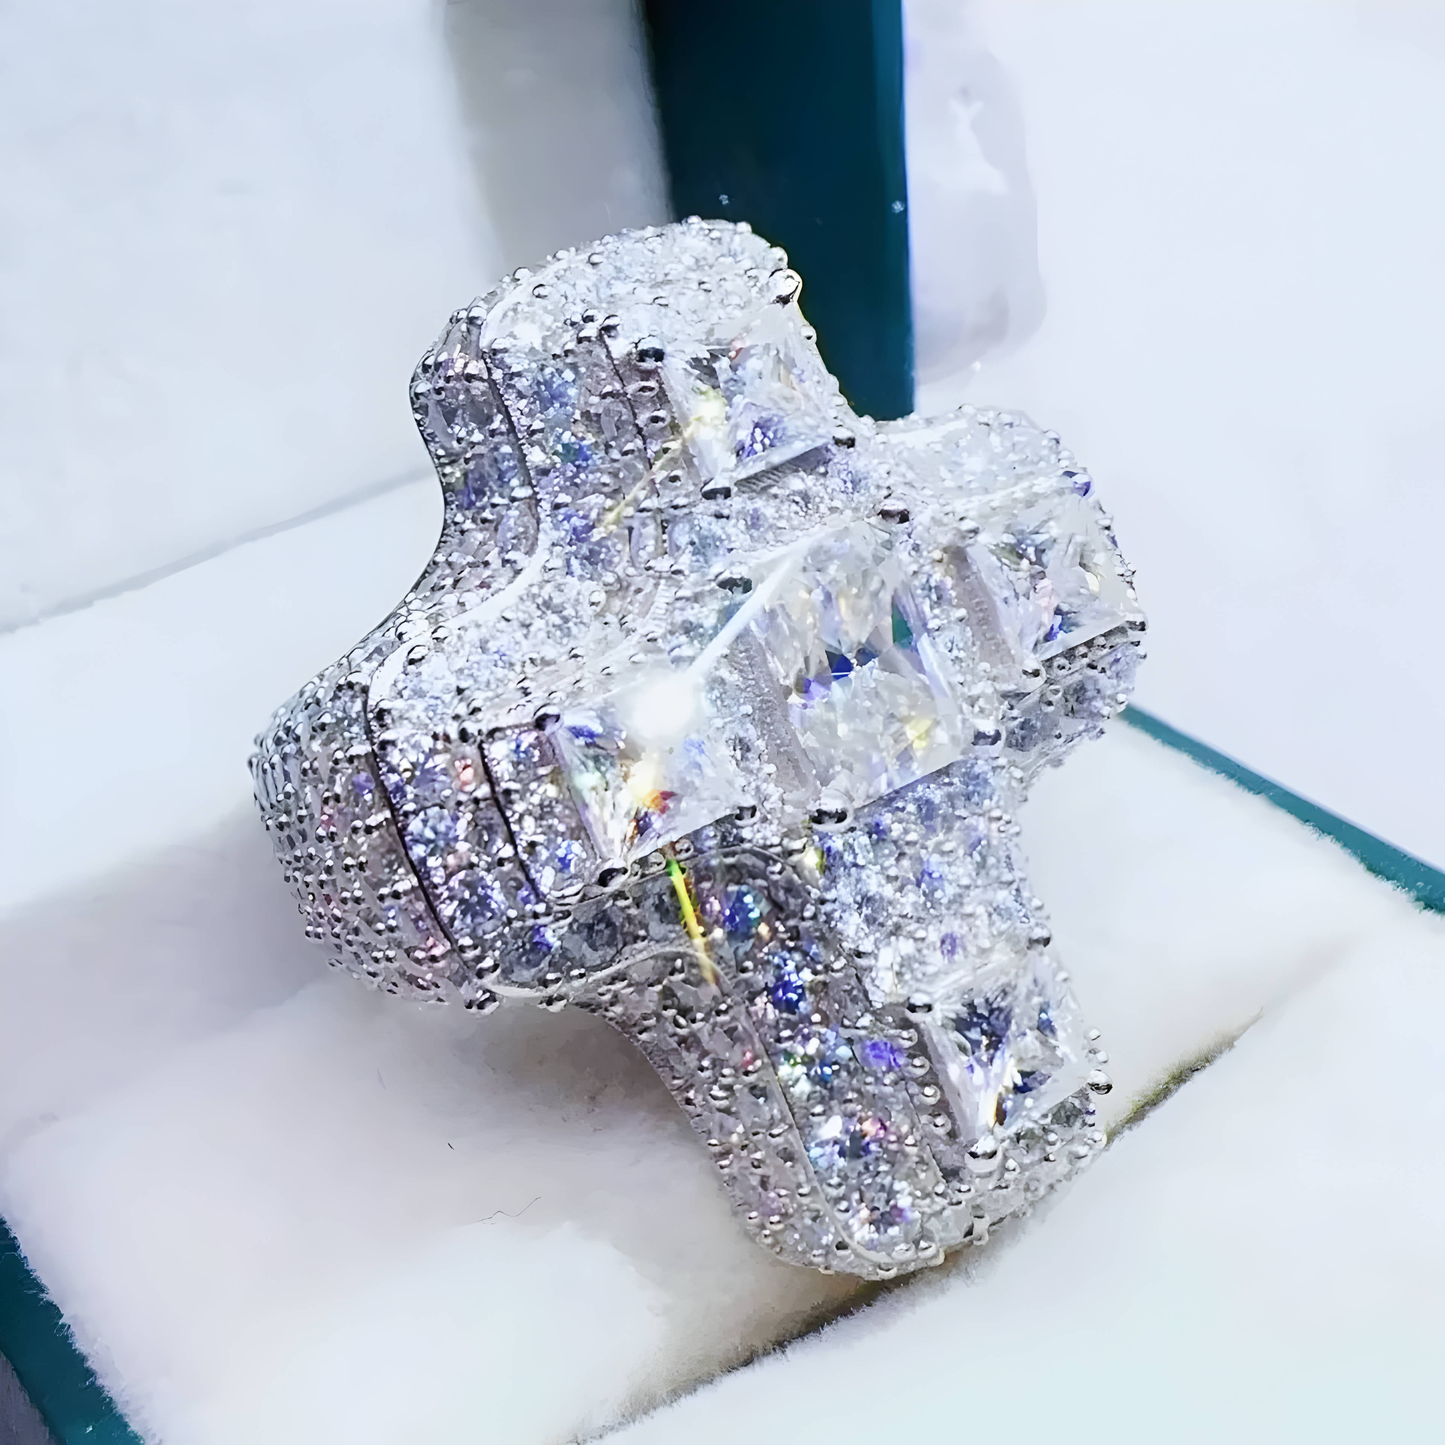 Solid Silver Moissanite Baguette Diamond Cross Ring